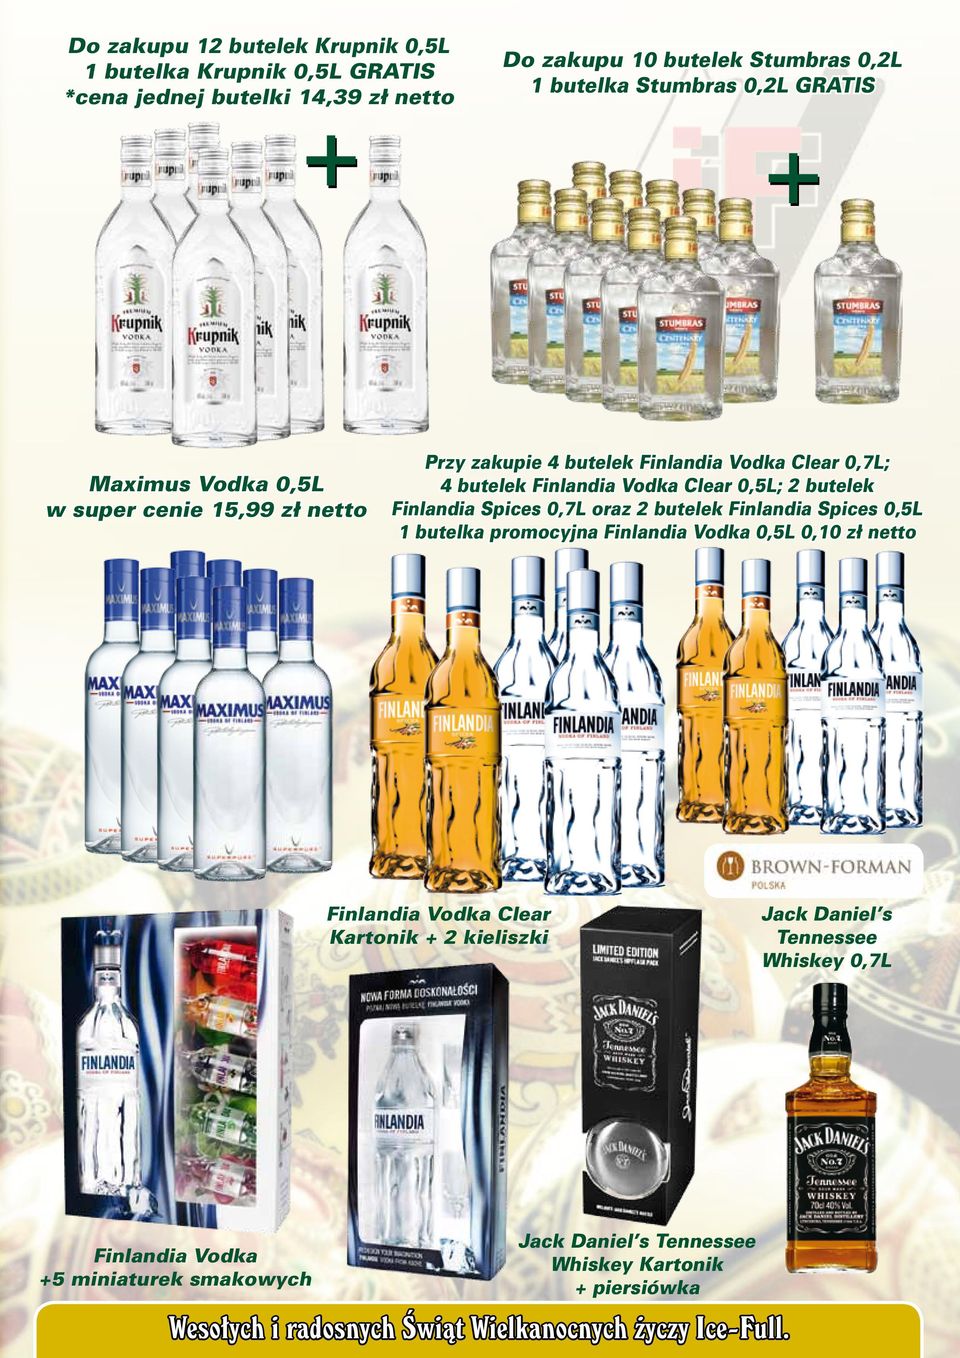 Clear 0,5L; 2 butelek Finlandia Spices 0,7L oraz 2 butelek Finlandia Spices 0,5L 1 butelka promocyjna Finlandia Vodka 0,5L 0,10 zł netto Finlandia